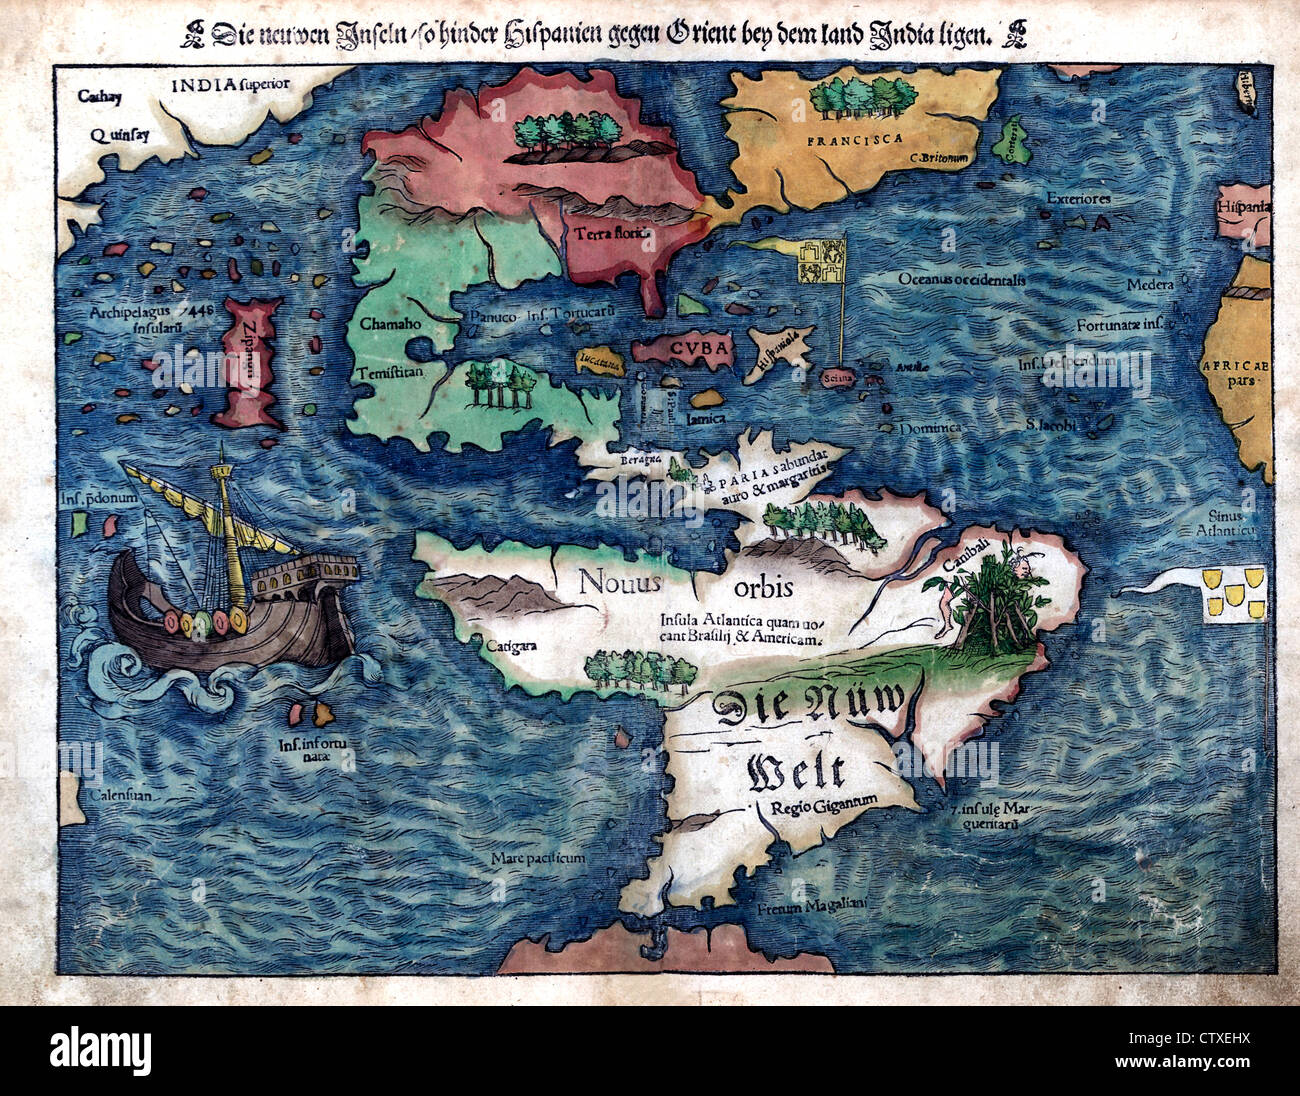 Karte der neuen Welt, ca. 1550 - Die Neuen Inseln, so behindern Hispanien Gegen Orient Bey Dem Land Indien Staatshilfen Stockfoto